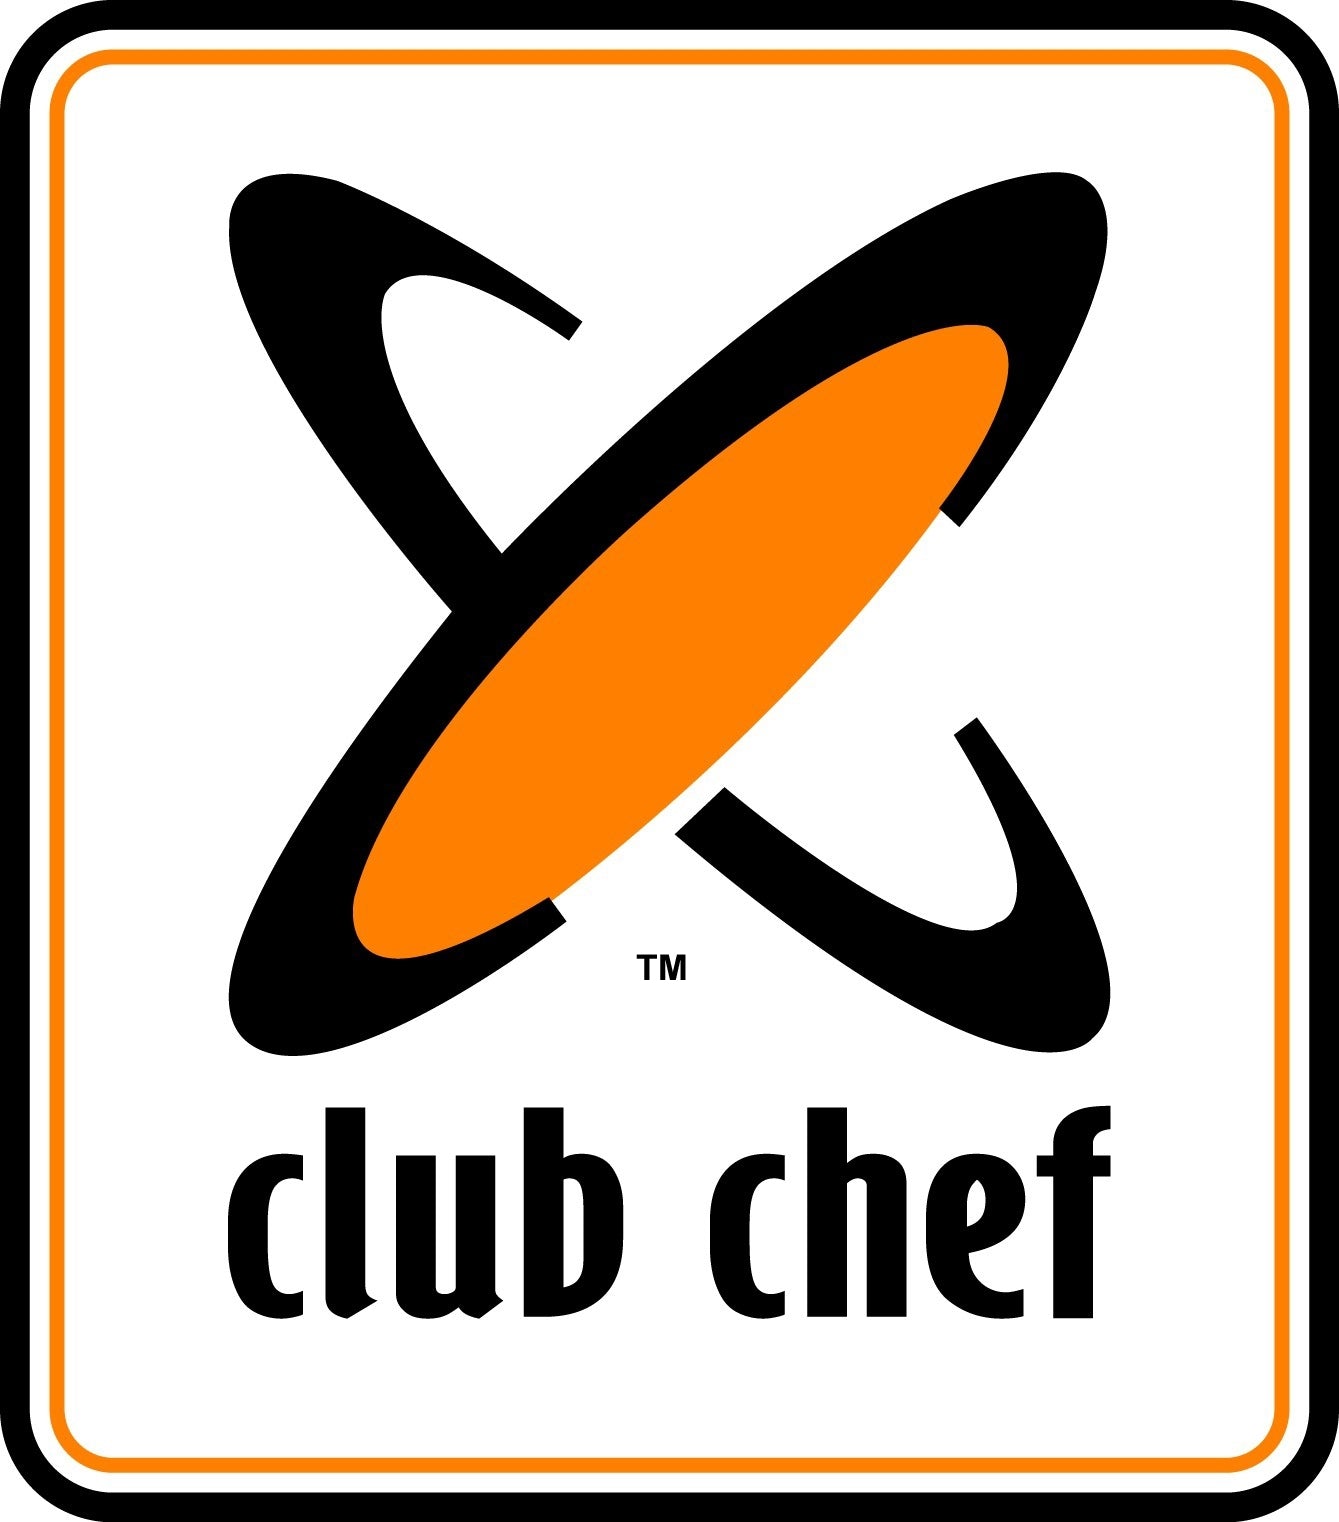 Chef Club Bib Apron - Regular - No Pocket M Chefwear by Chef Club | The Bloke Shop